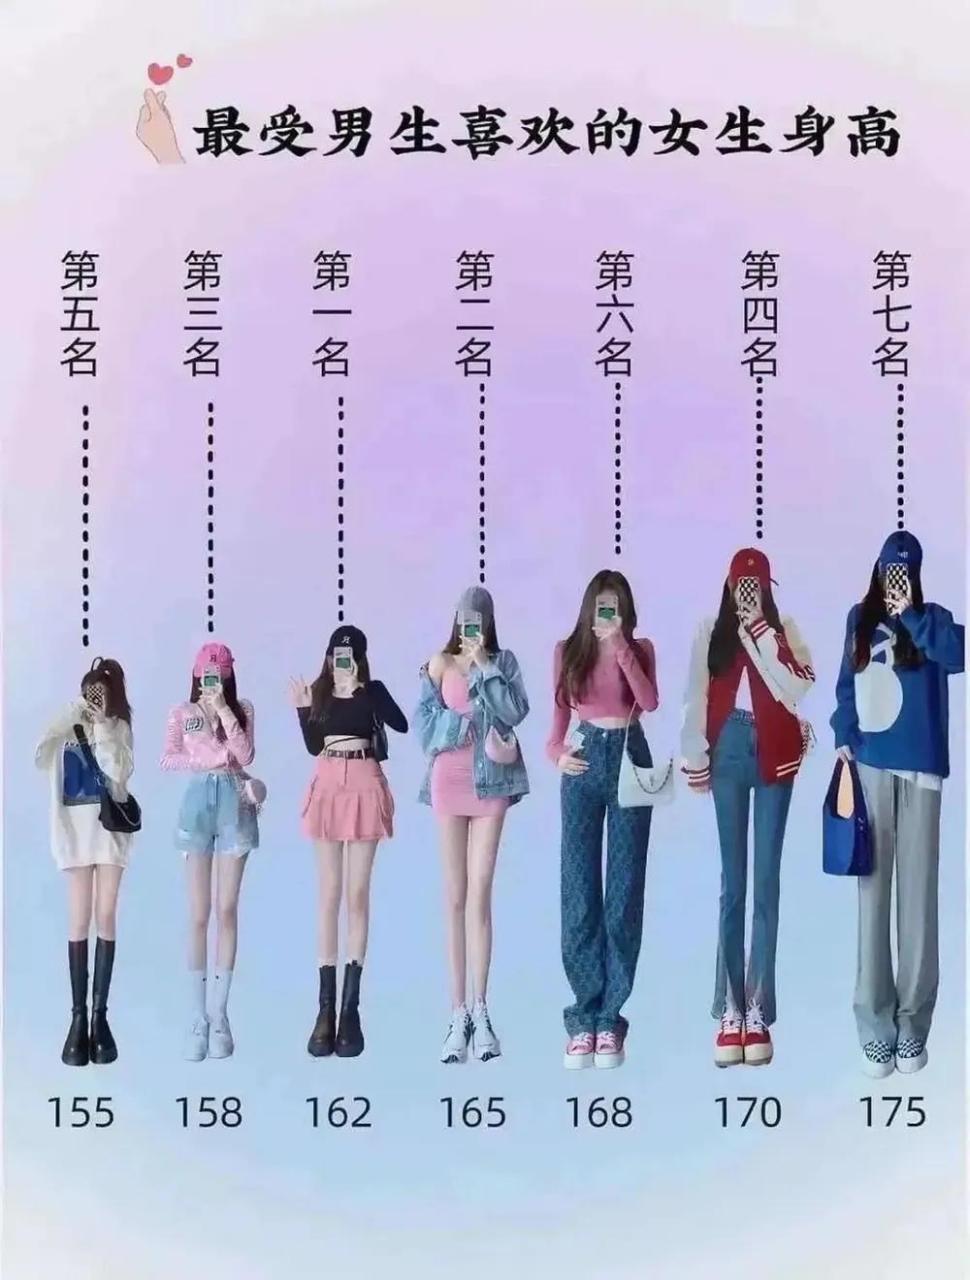 女生平均身高 女性图片